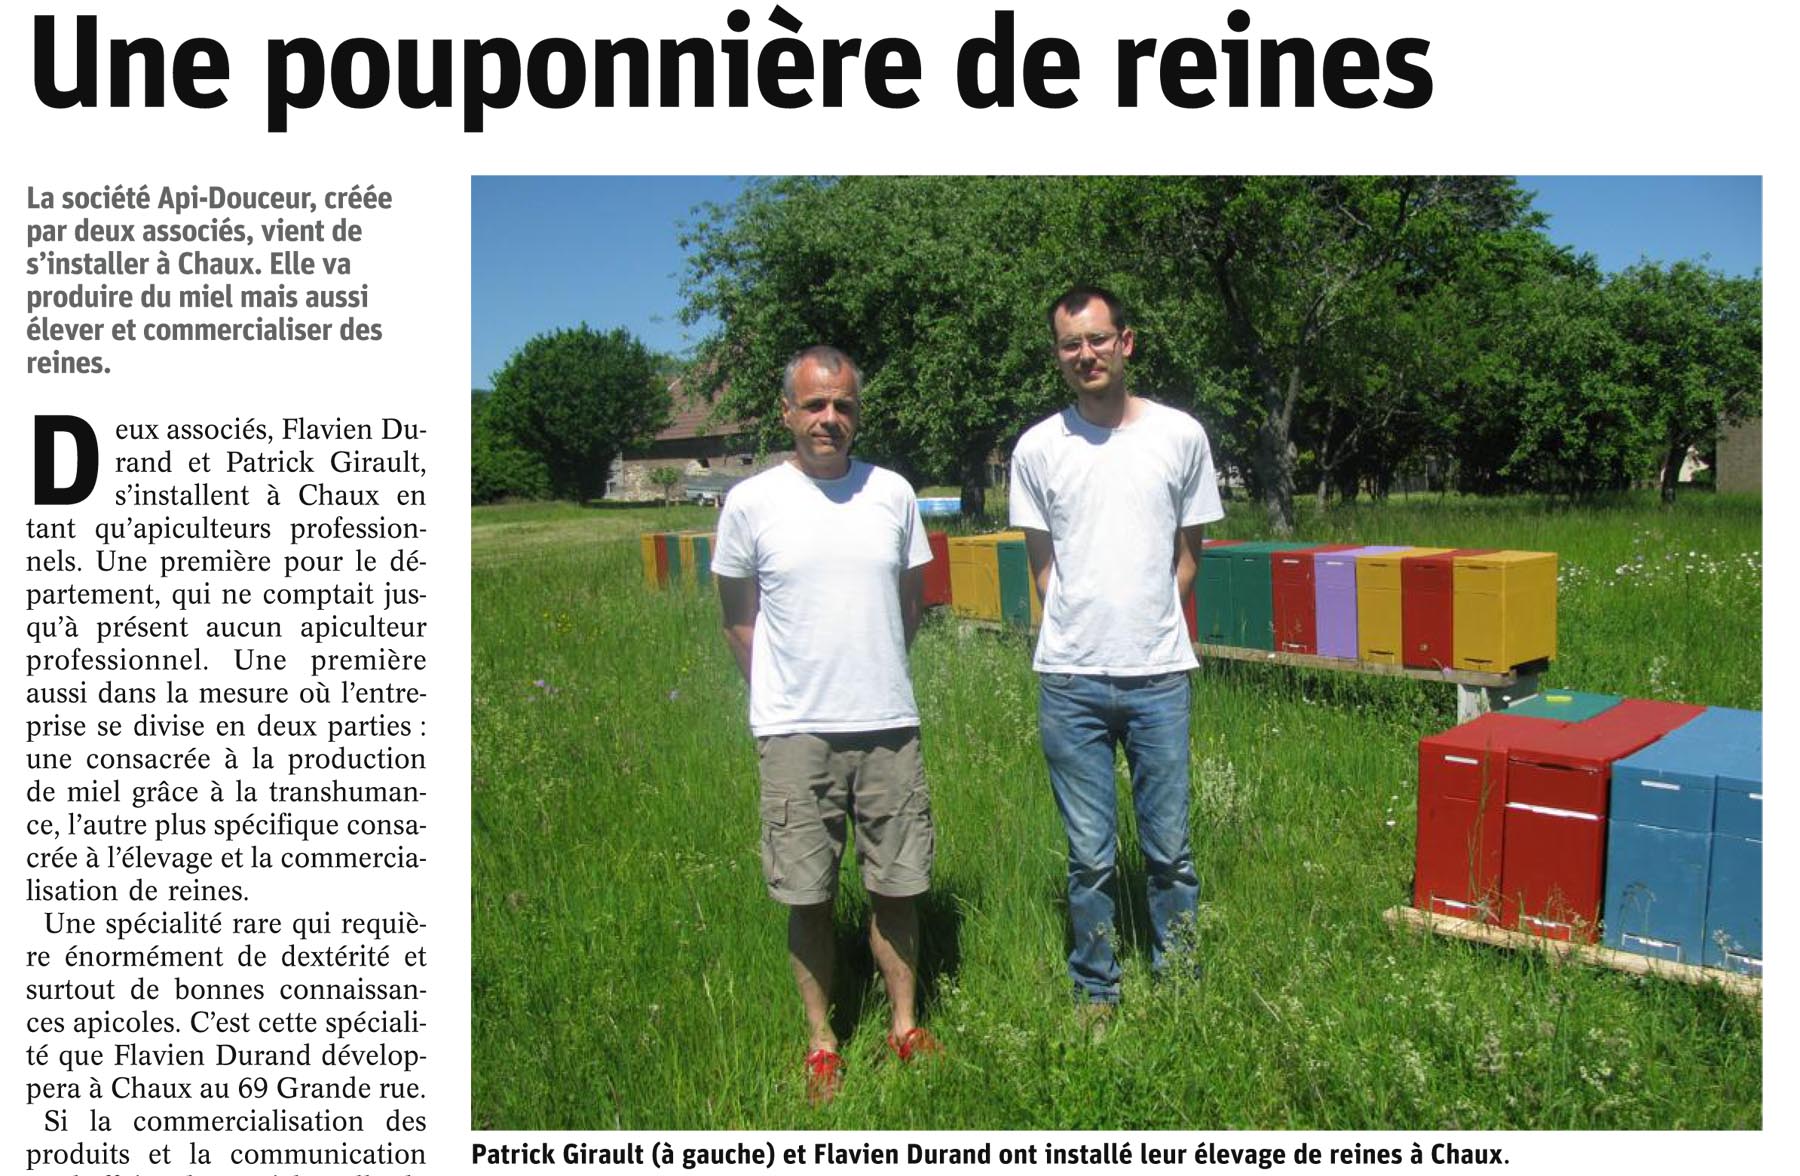 Flavien Durand et Patrick Girault installent api-douceur à Chaux